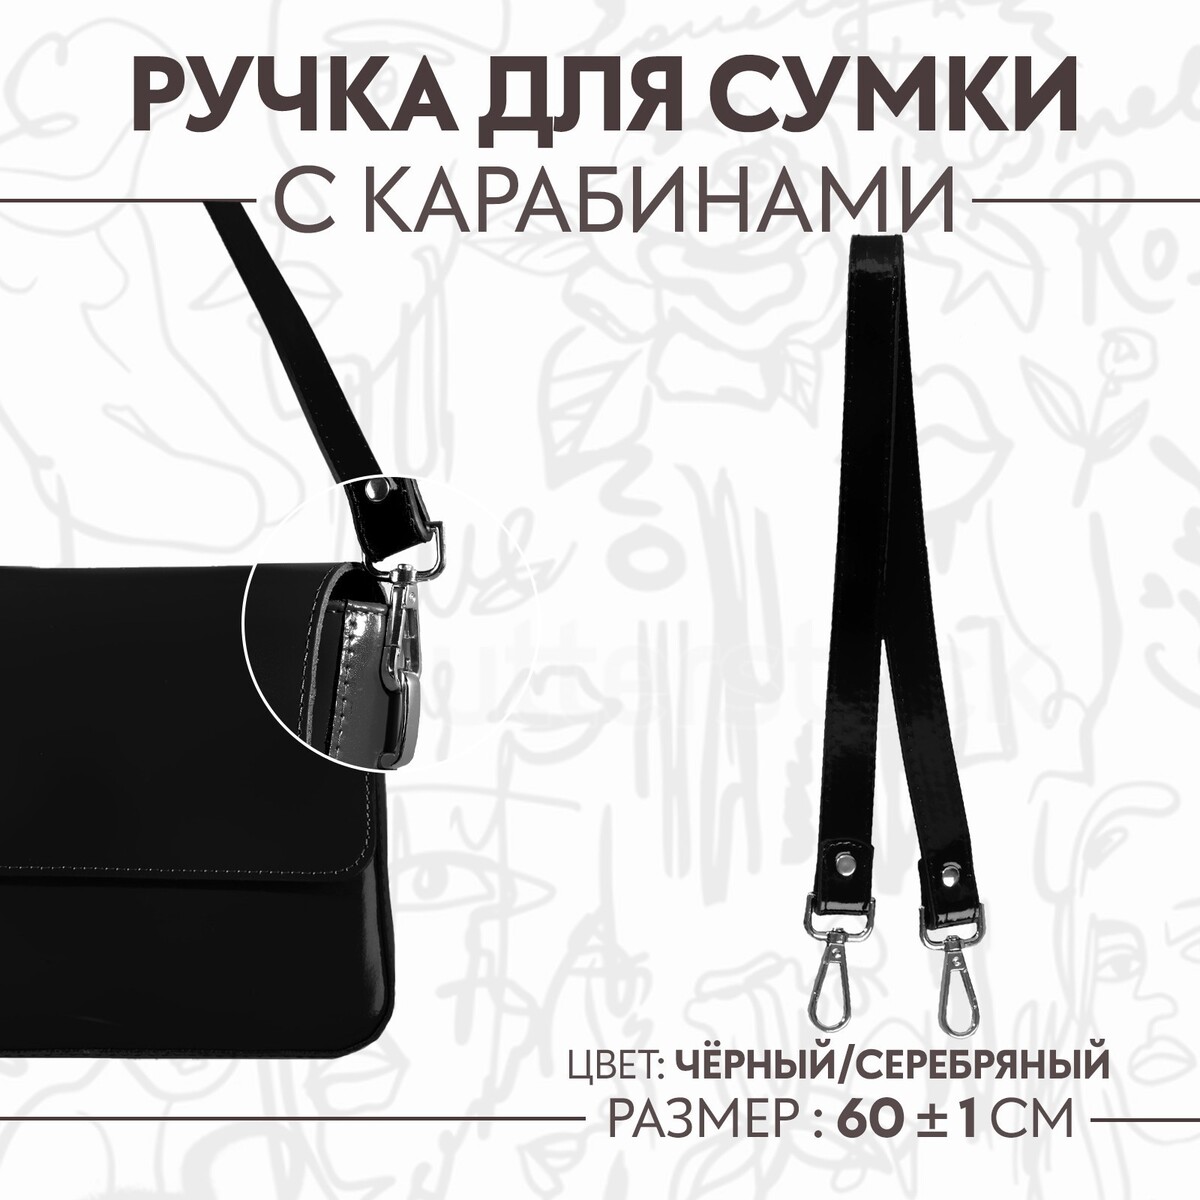 Ручка для сумки лакированная, с карабинами, 60 ± 1 см, цвет черный ручка шнурок для сумки с карабинами 120 × 0 6 см